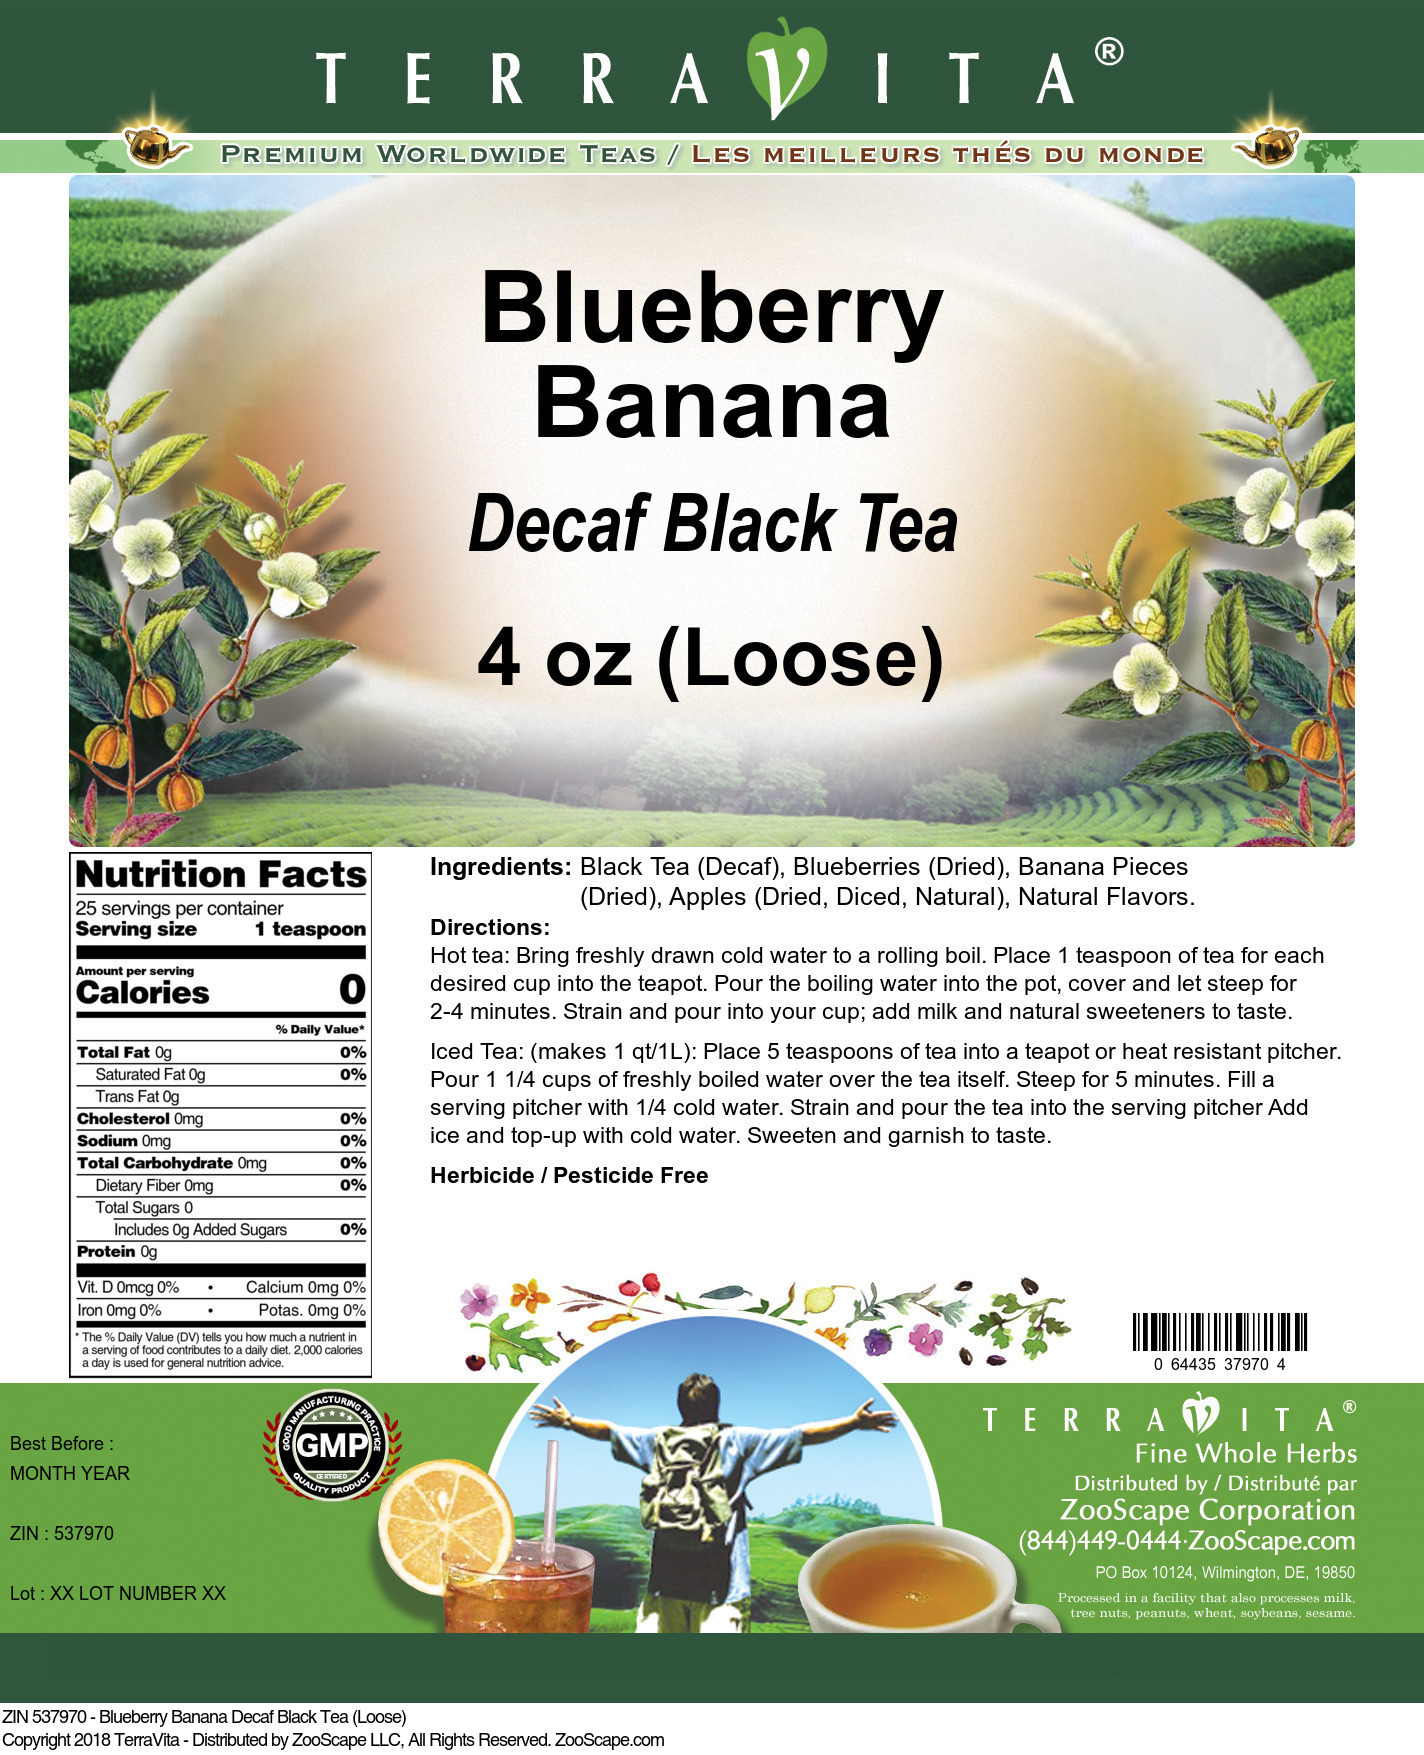 Blueberry Banana Decaf Black Tea (Loose) - Label